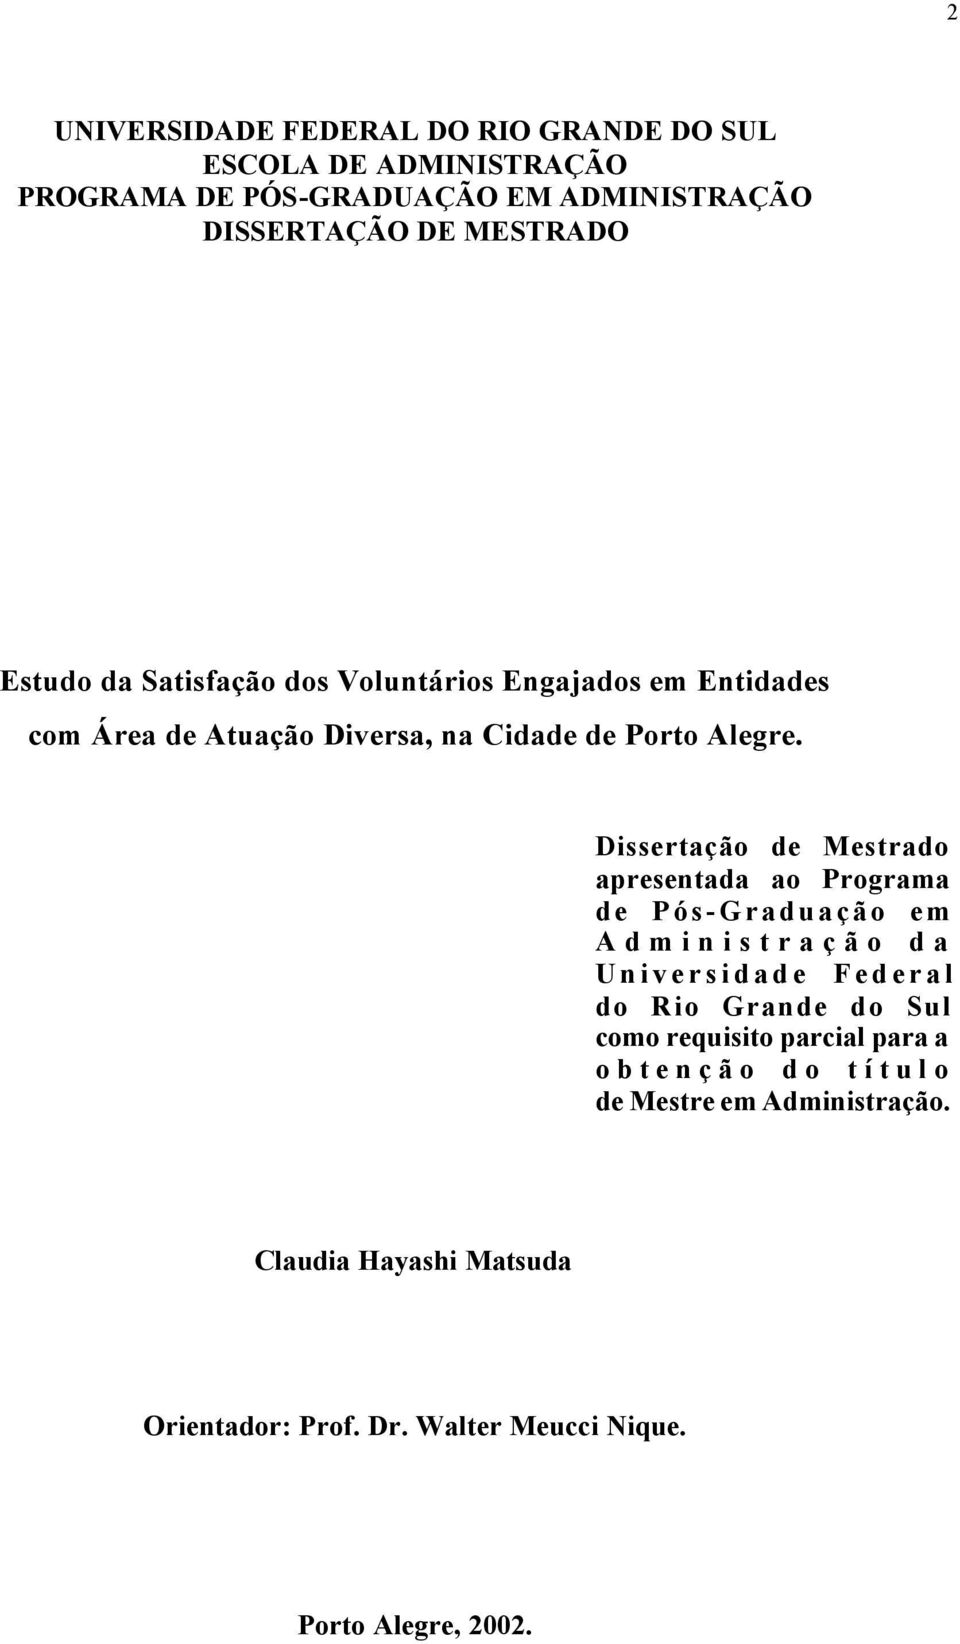 Dissertação de Mestrado apresentada ao Programa de Pós-Graduação em Administração da Universidade Federal do Rio Grande do Sul como